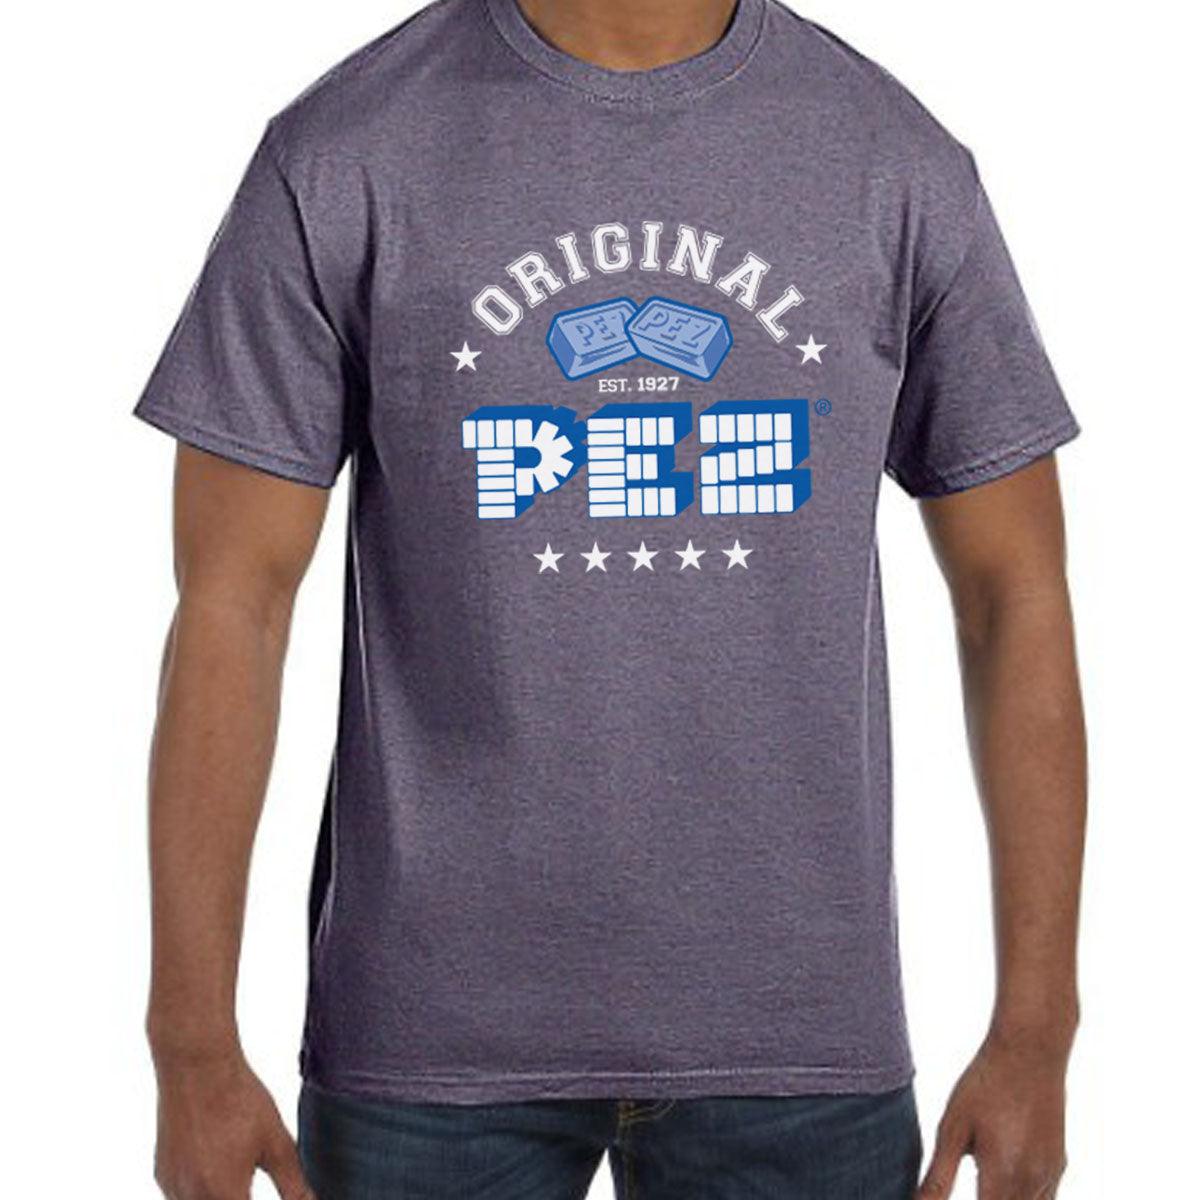 PEZ Original Since 1927 Adult T-Shirt